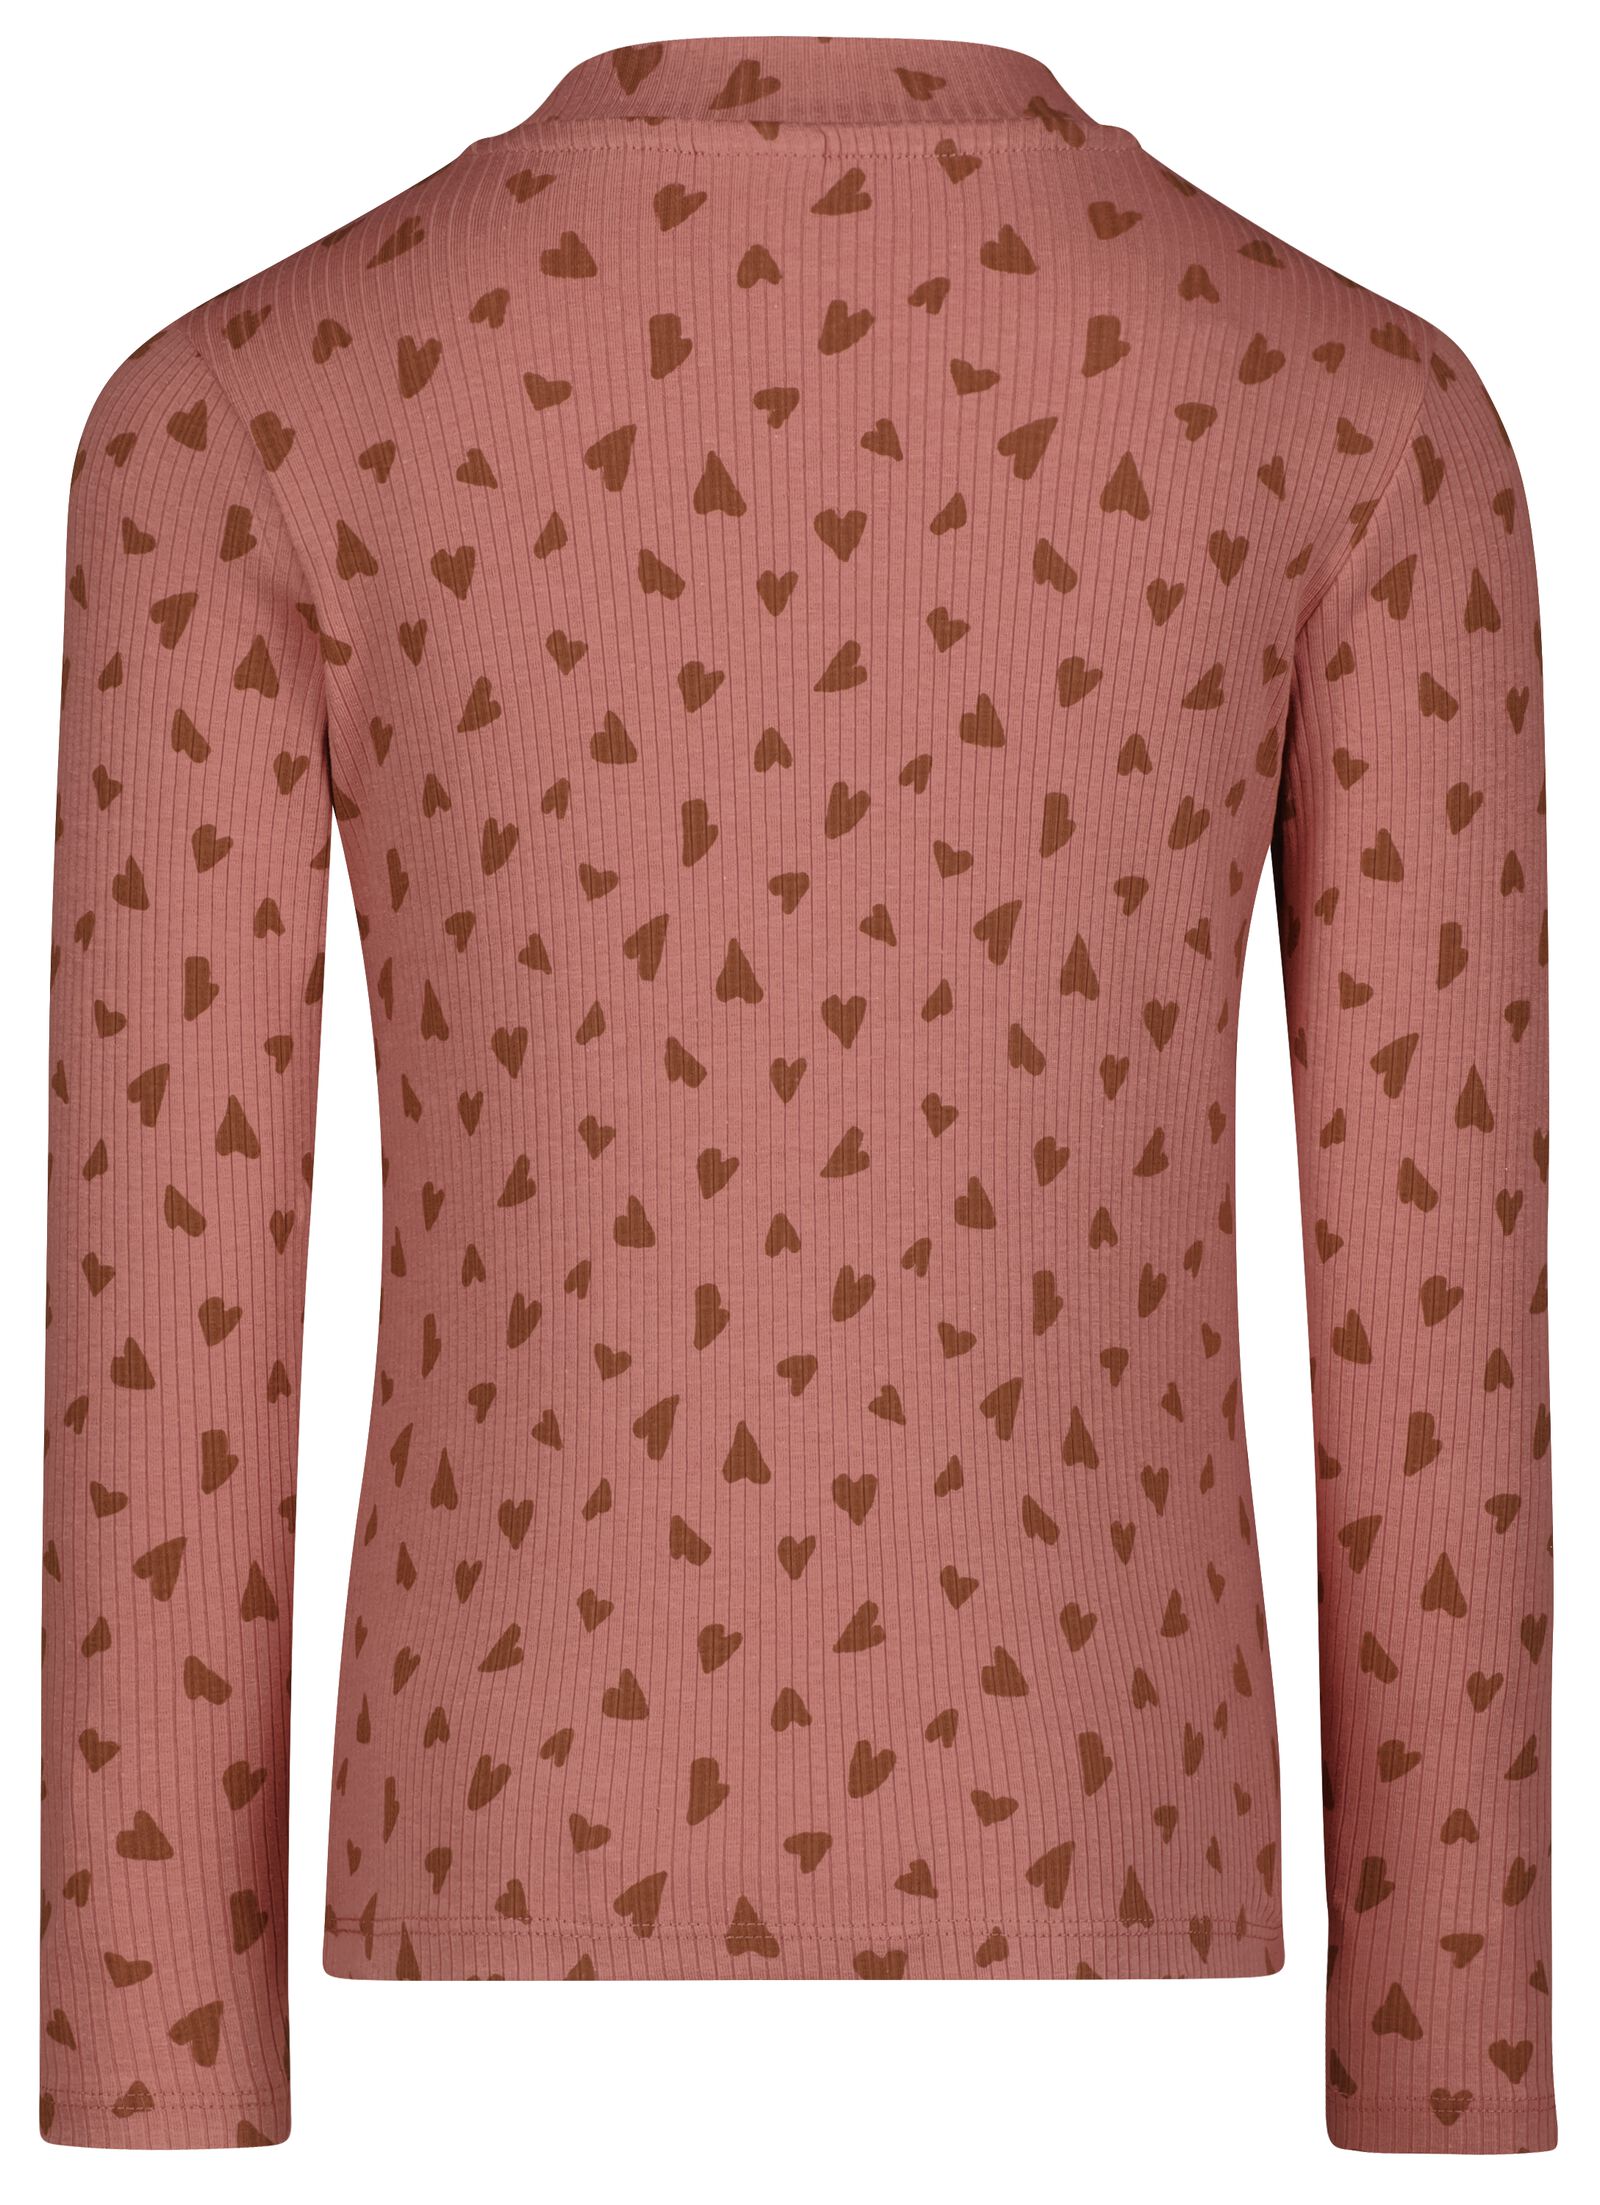 Kinder-Shirt, gerippt rosa - 1000028365 - HEMA